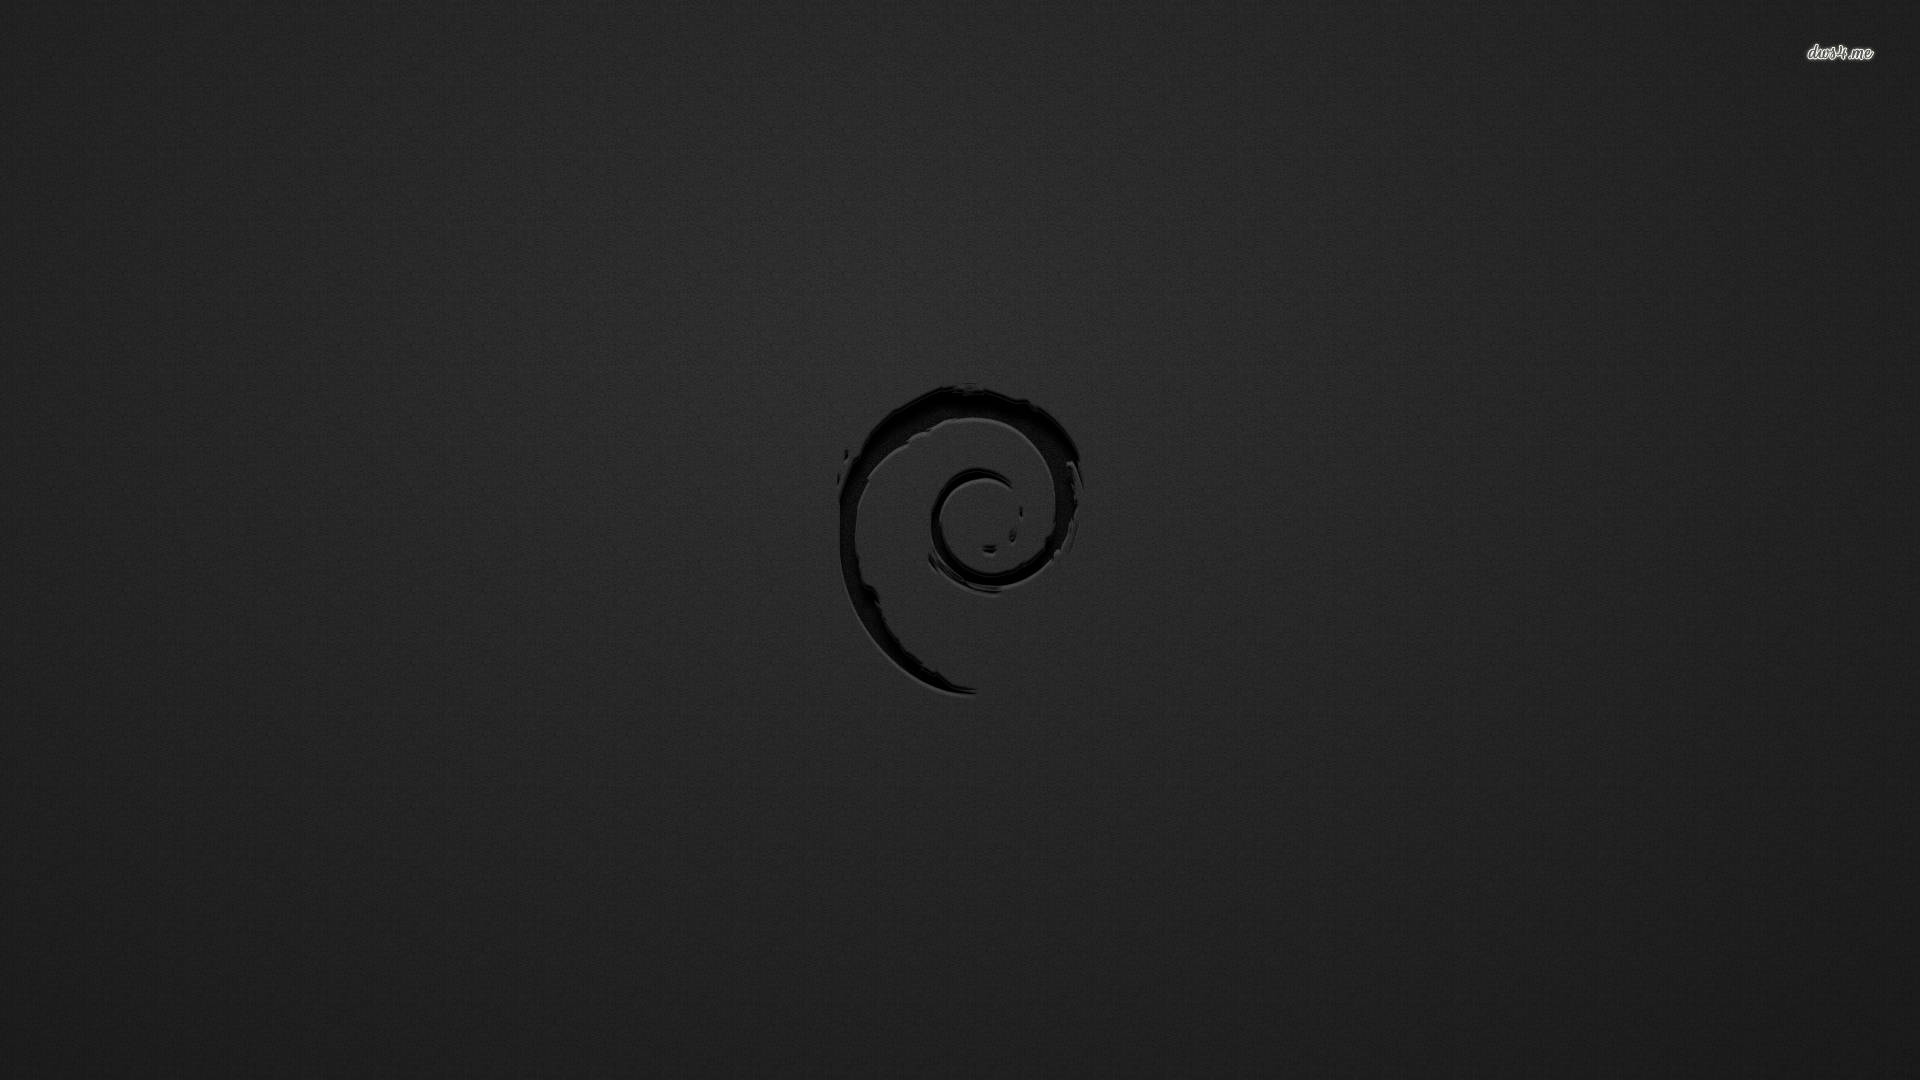 Debian wallpaper wallpaper - #